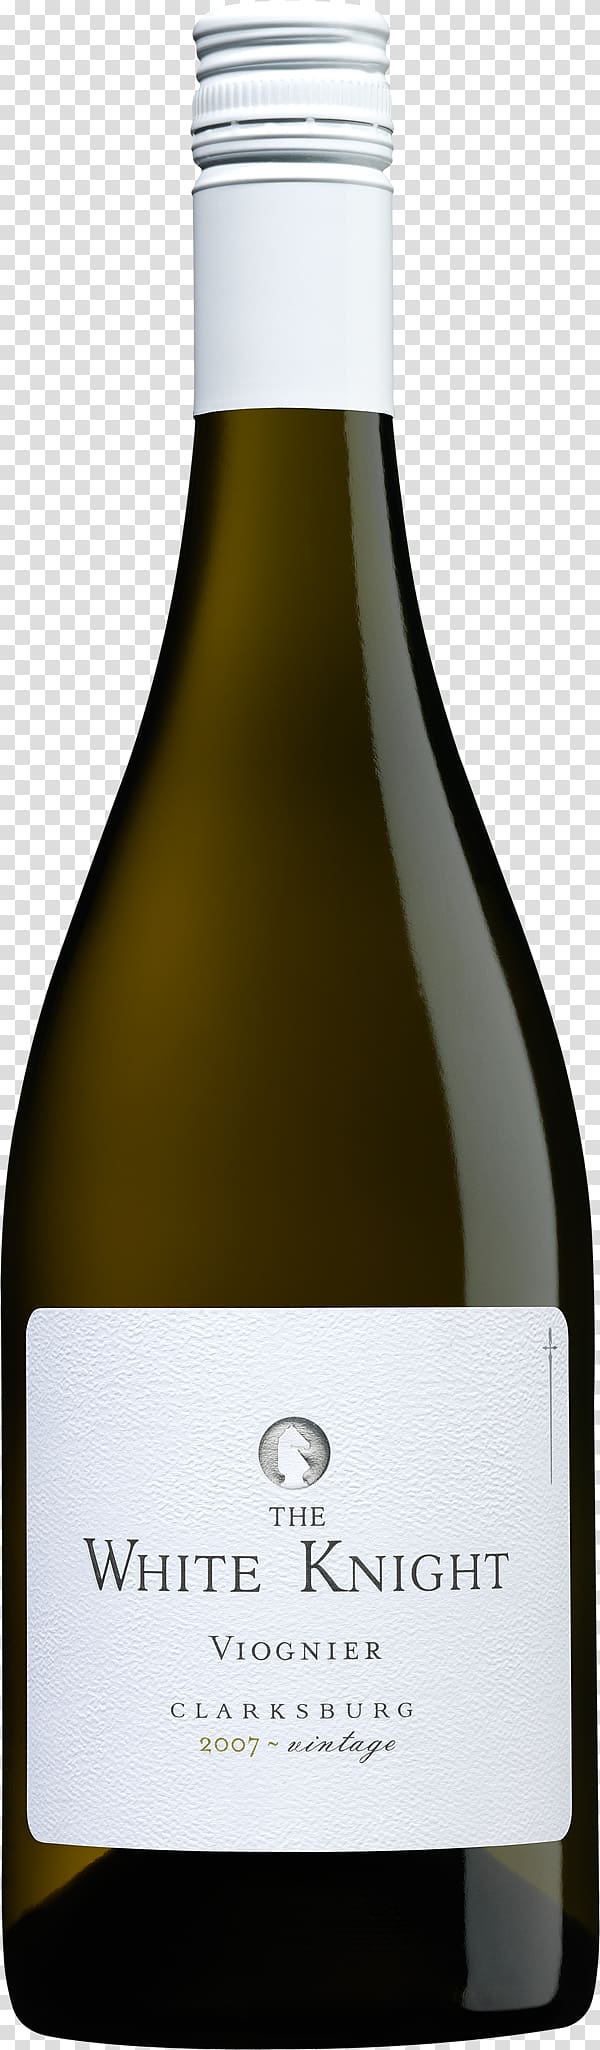 Wine Beer Bottle , Bottle transparent background PNG clipart